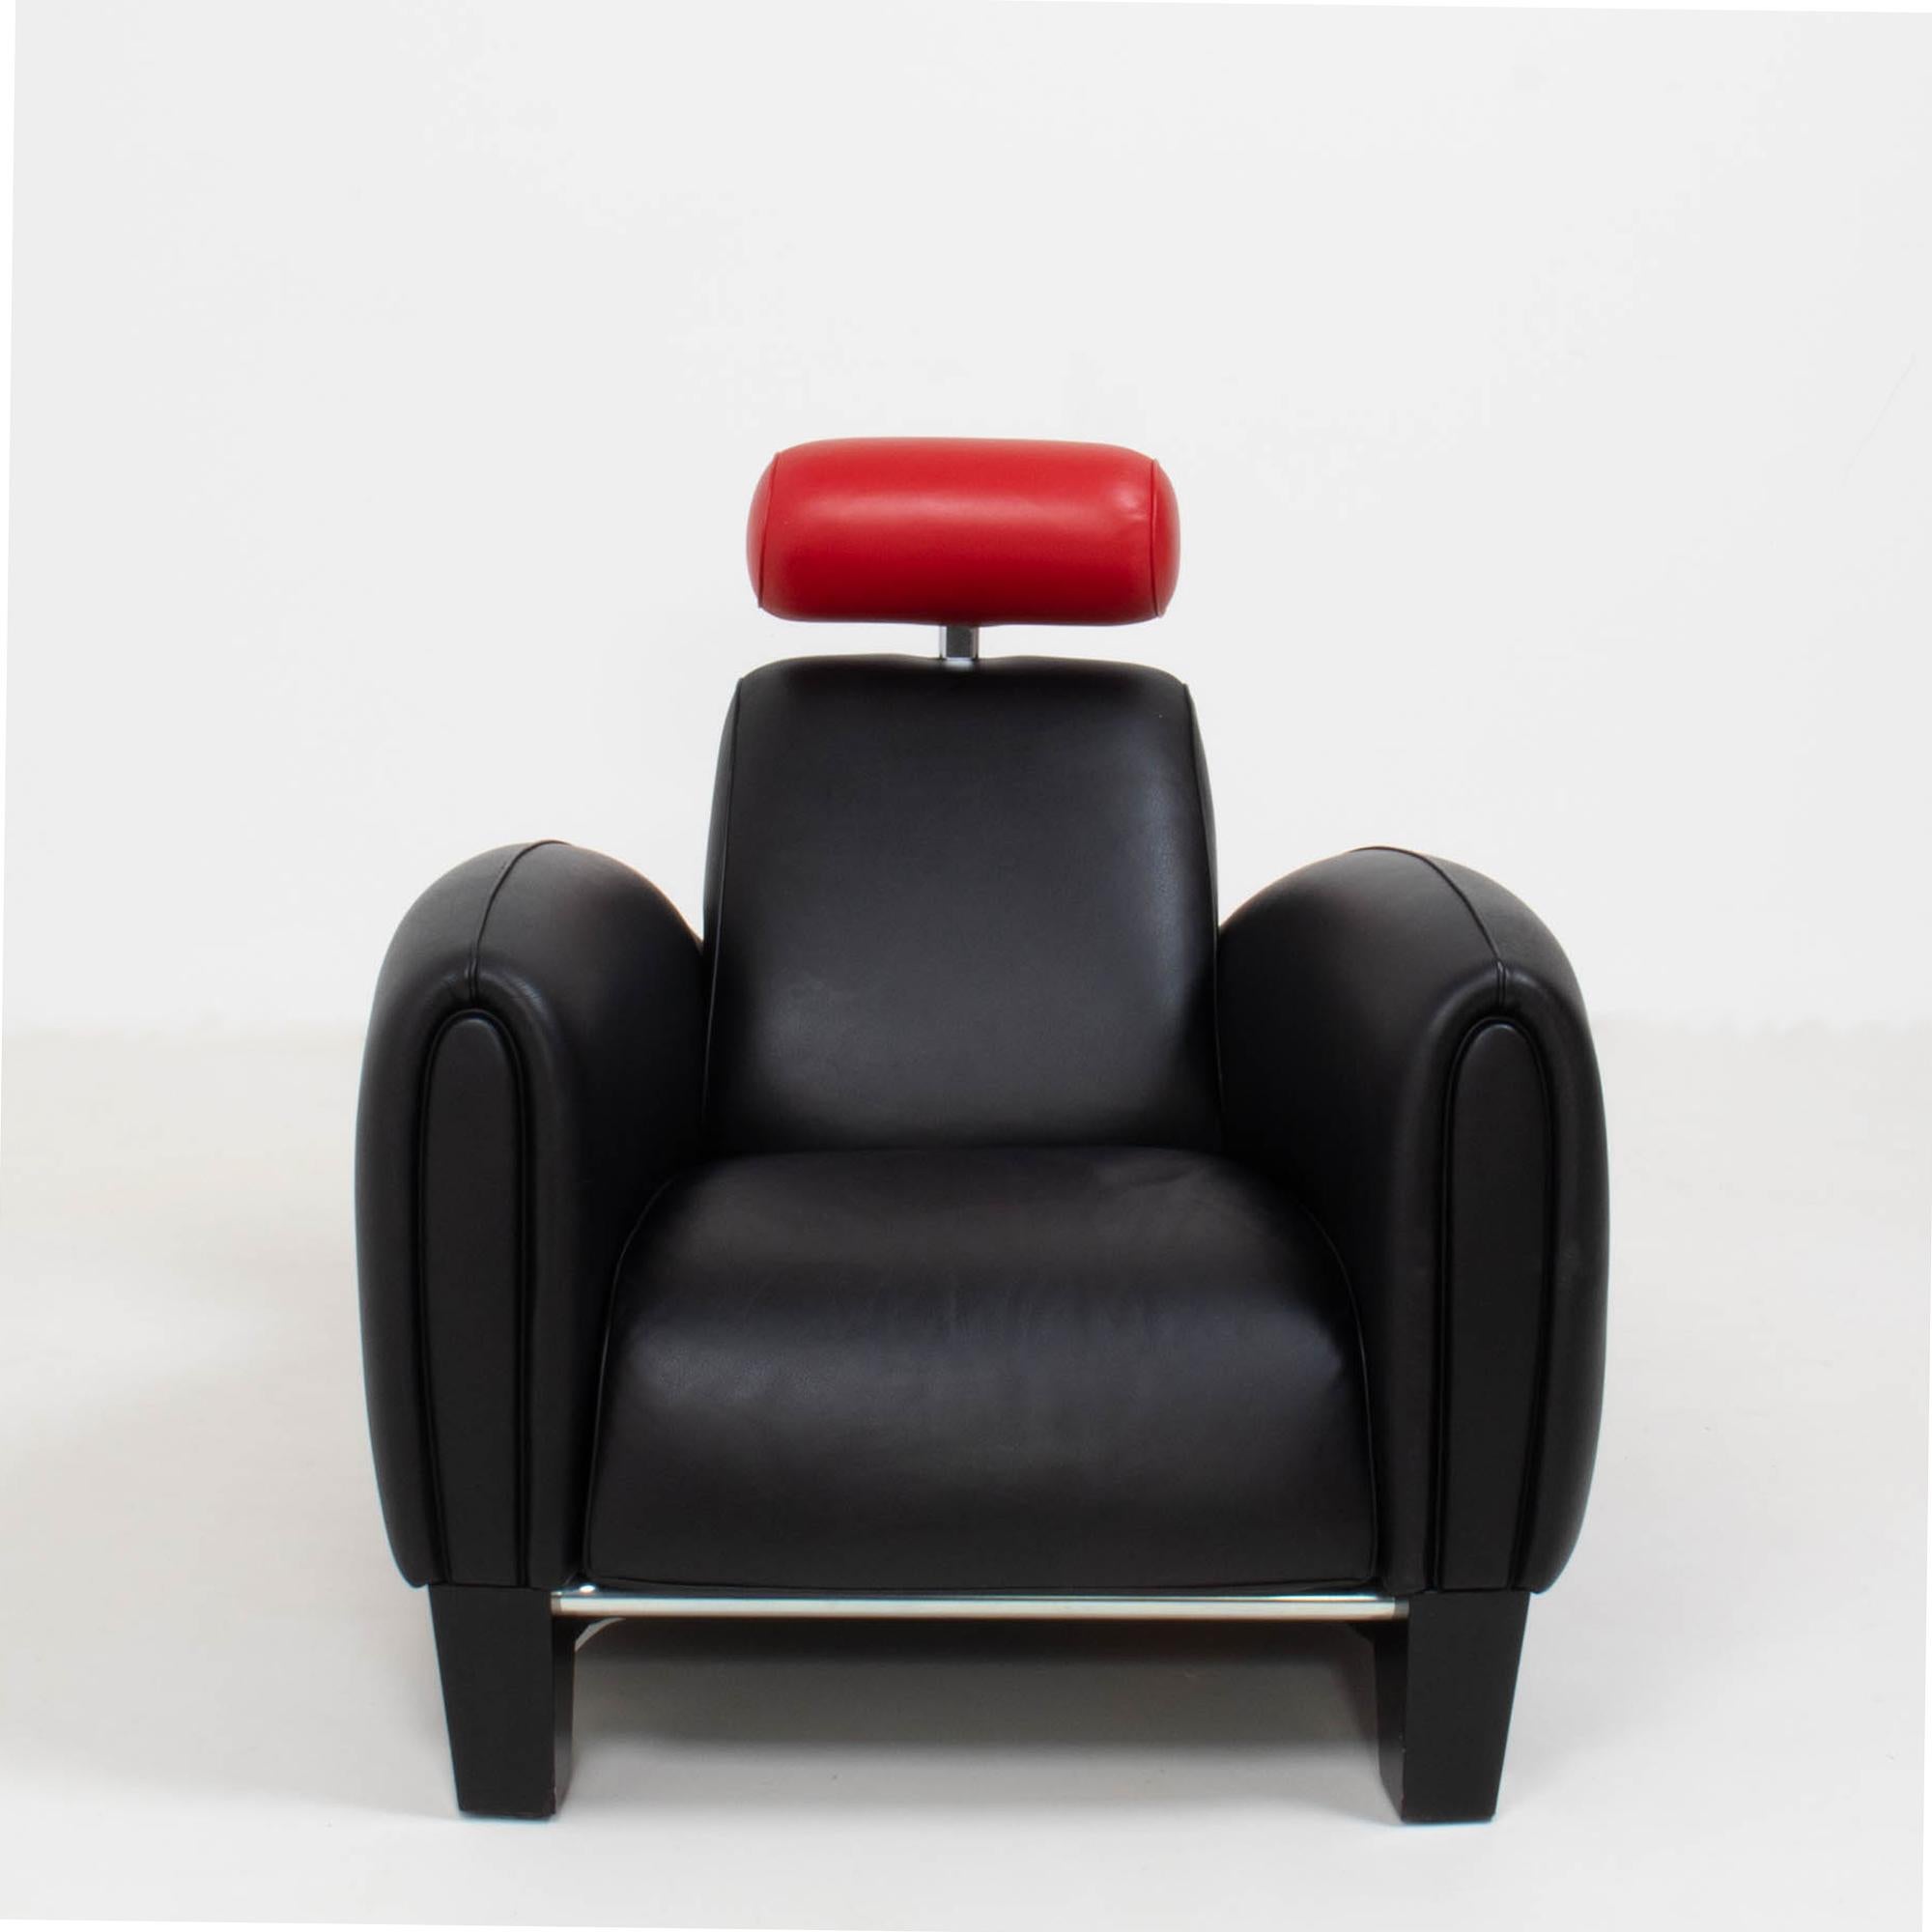 Diseñado por Franz Romero para la marca suiza de muebles De Sede, el sillón DS-57 es una pieza de diseño audaz.

Con reminiscencias de un coche de carreras de los años 30, el sillón tiene una estructura aerodinámica que equilibra a la perfección